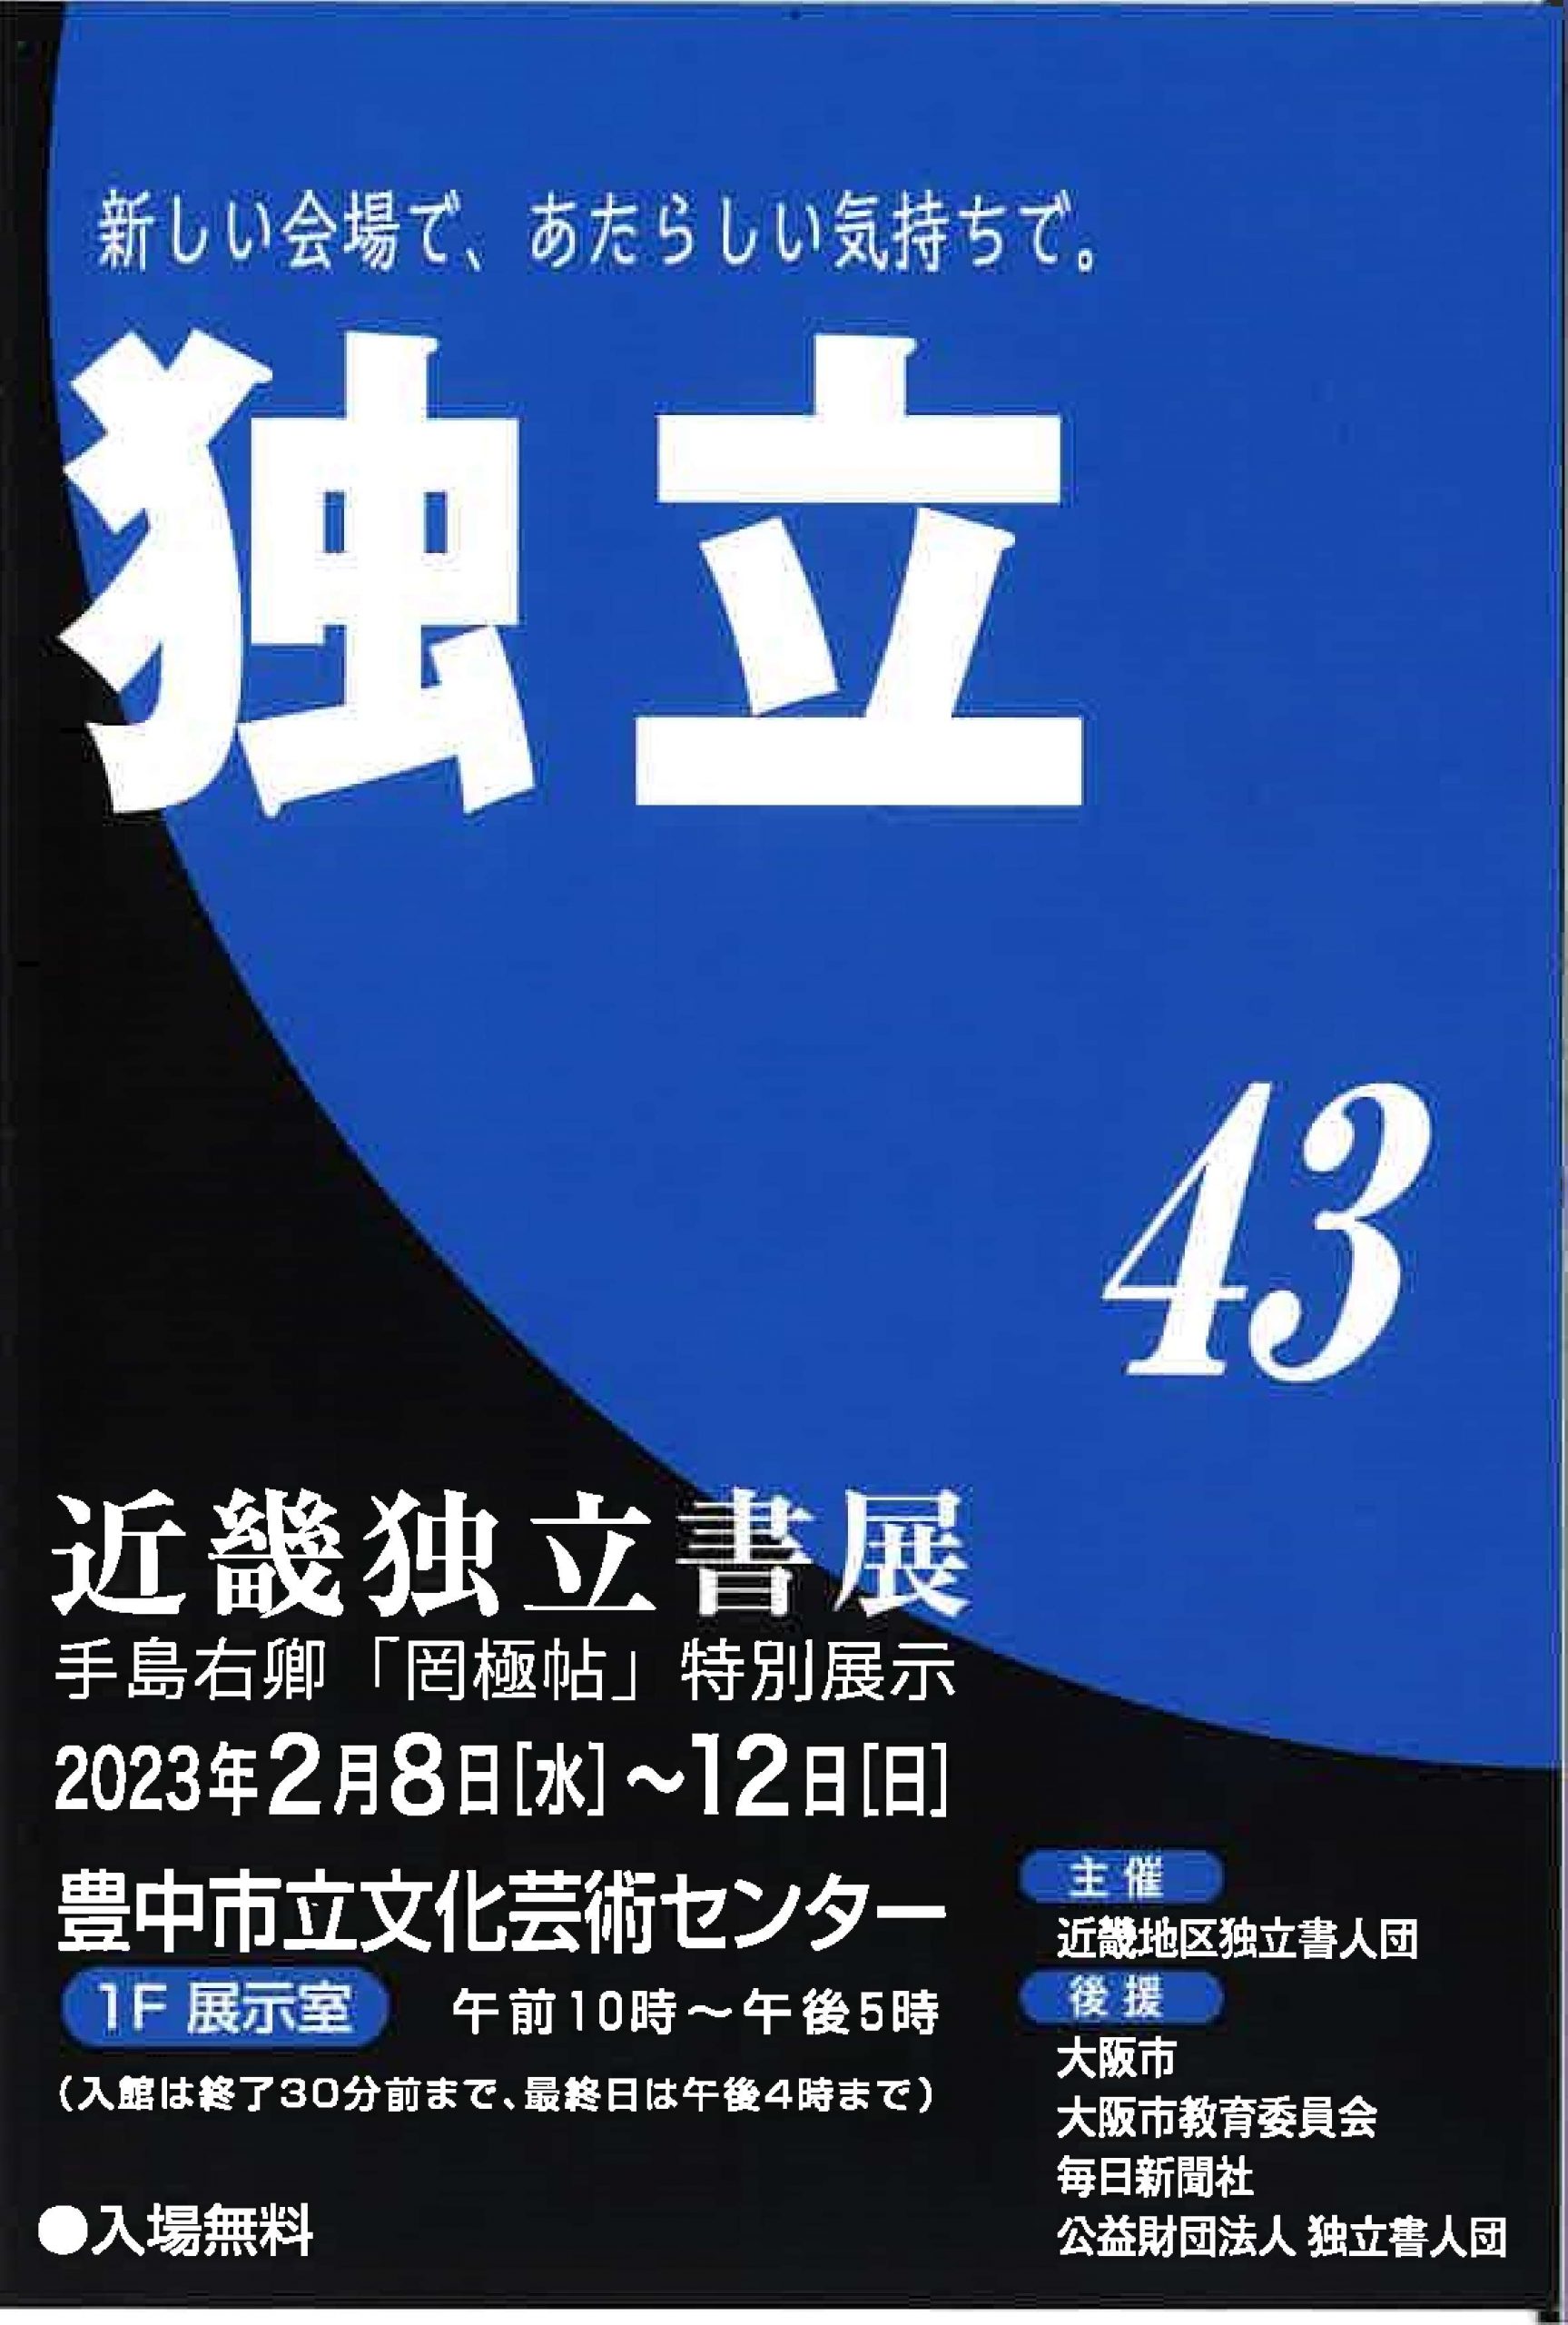 【展覧会情報】第43回 近畿独立書展